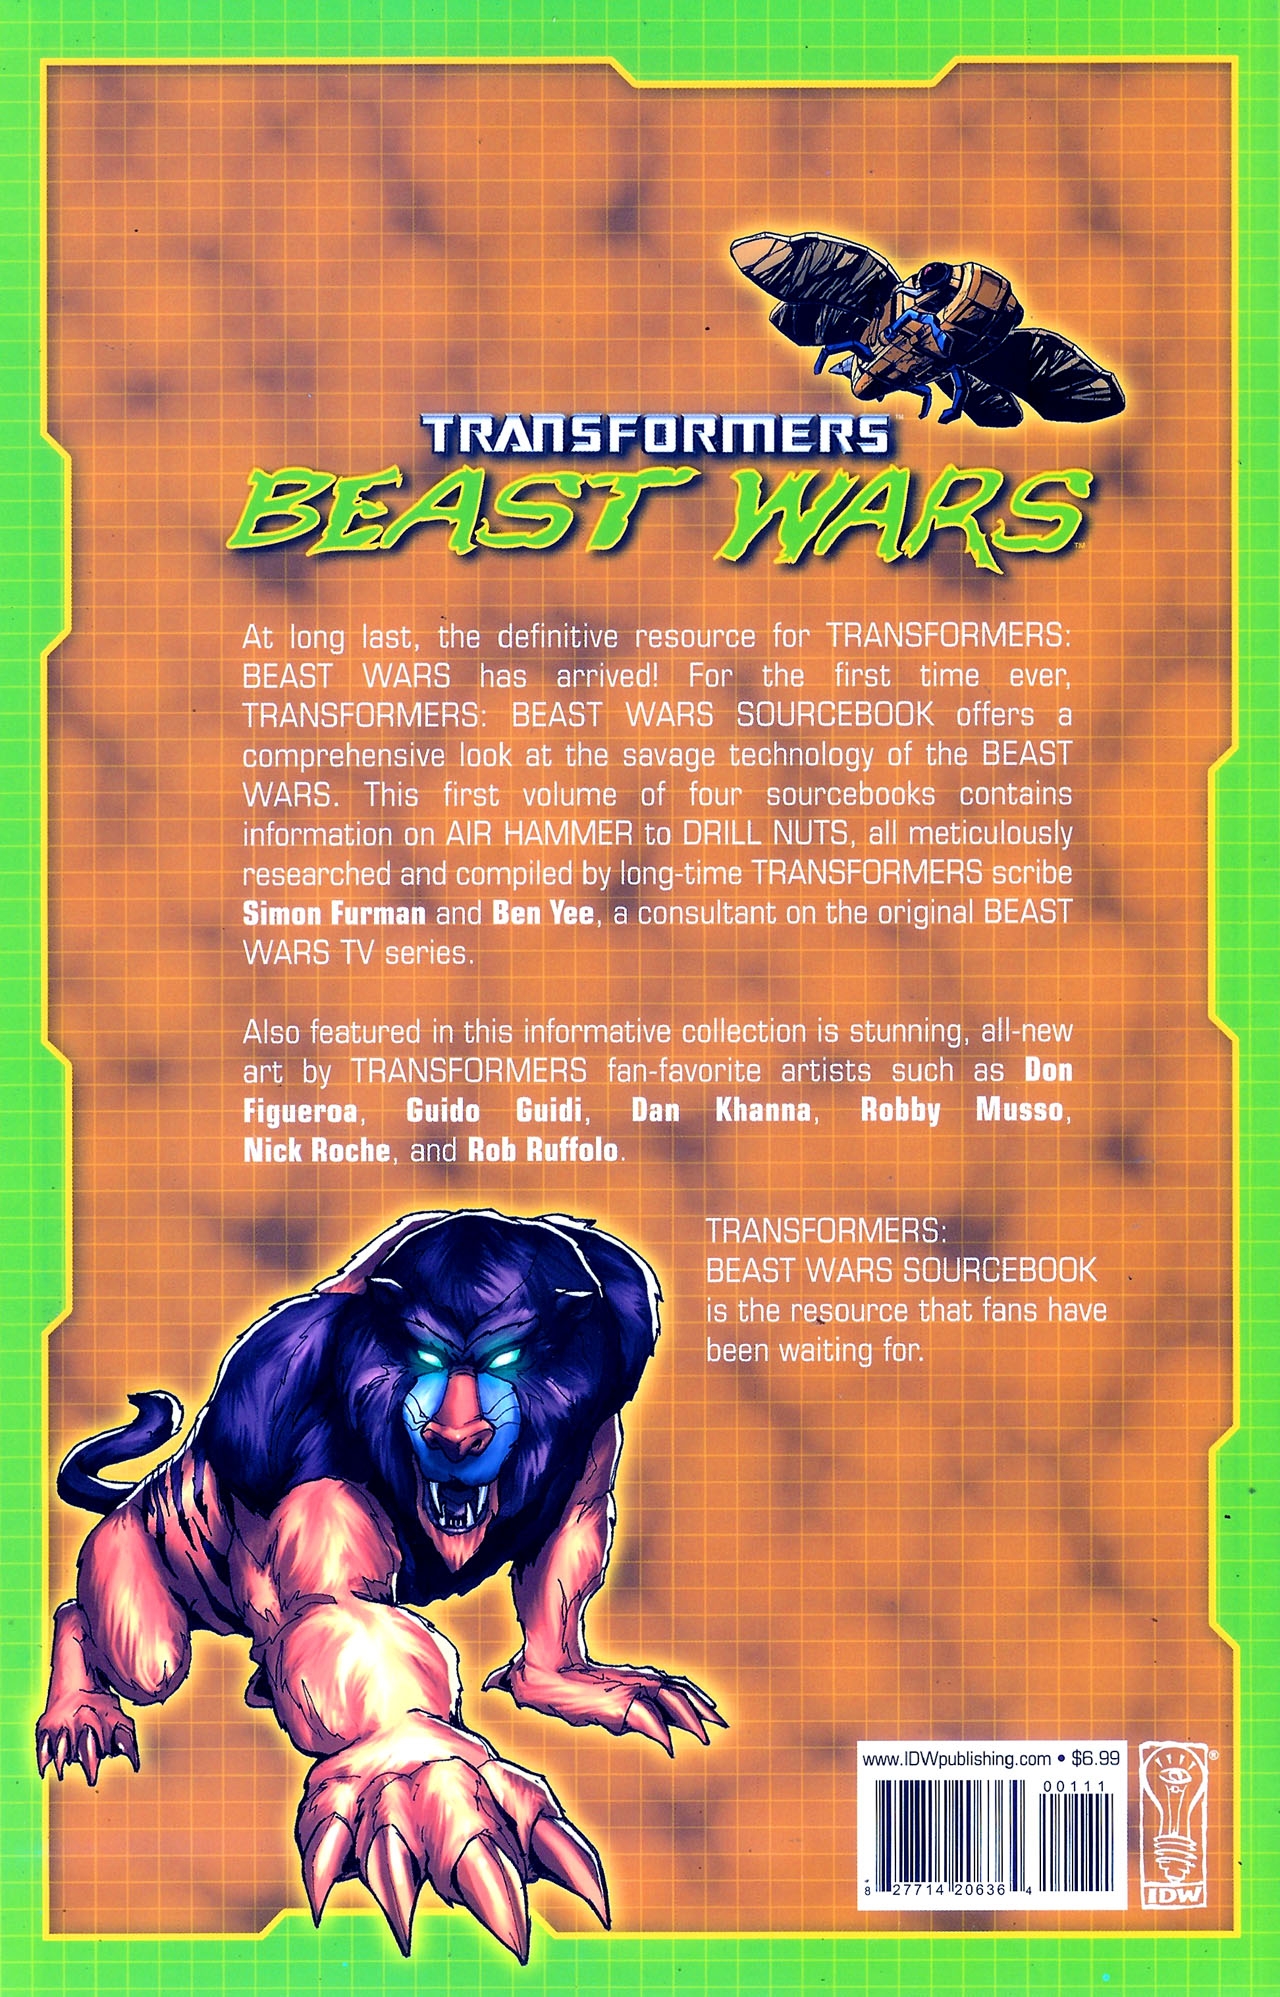 Transformers: Beast Wars Sourcebook #1-4 44